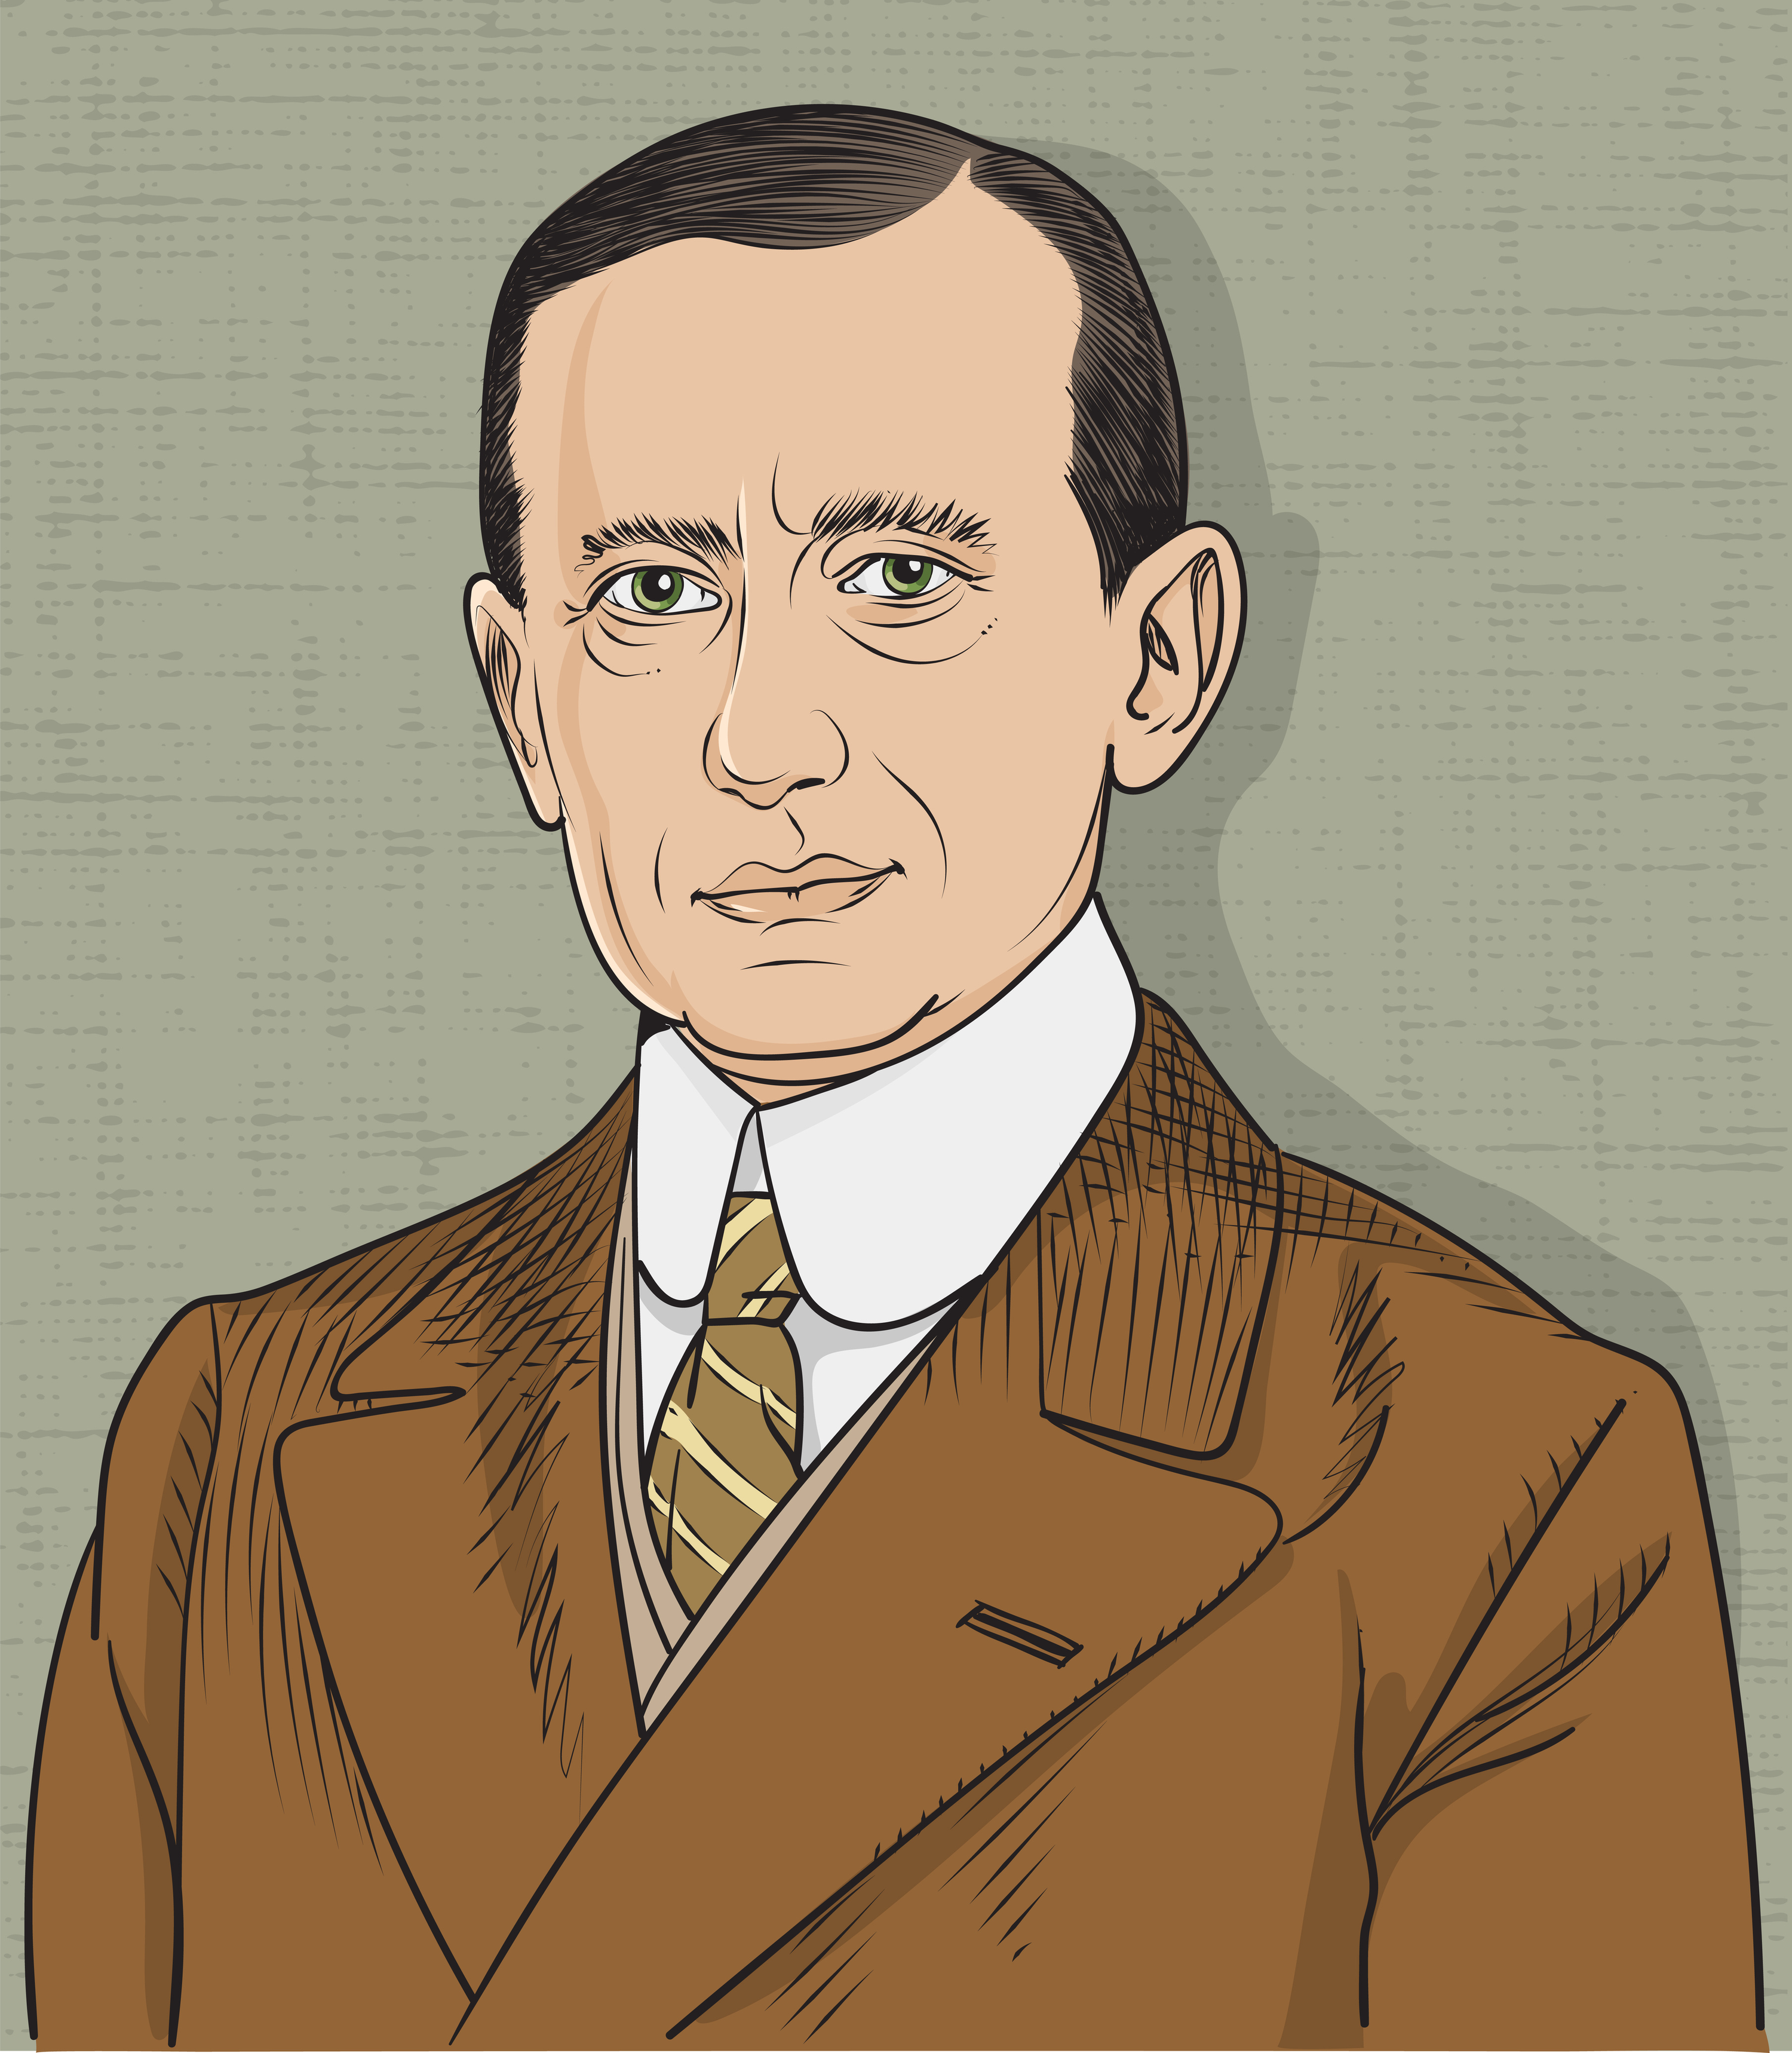 Il y a 120 ans, Marconi recevait le premier message sans fil